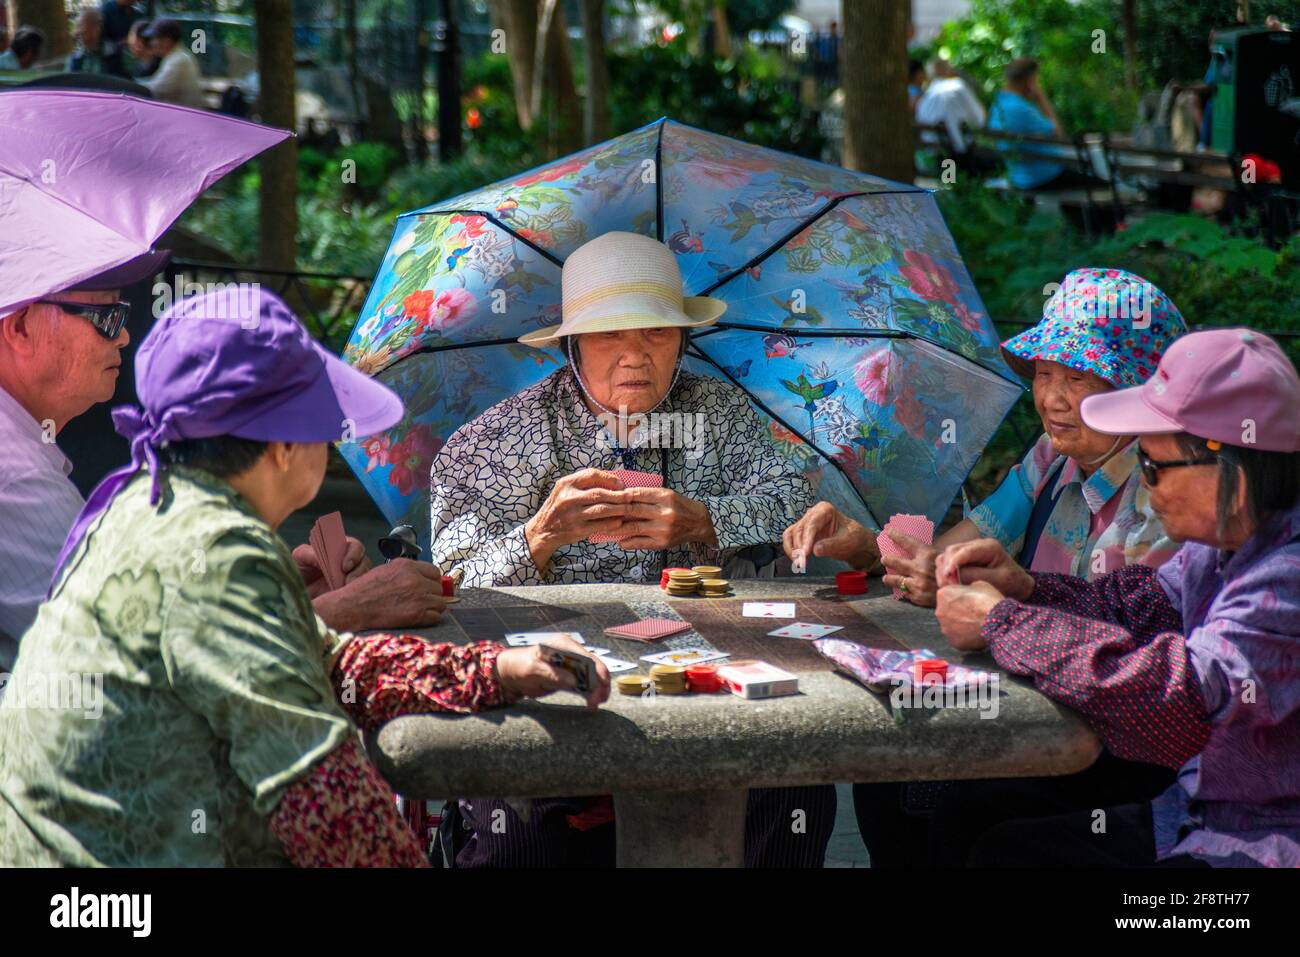 El Parque Columbus, vista en el verano de los miembros de la comunidad china jugando a las cartas en el Parque Columbus en Chinatown, en el centro de Manhattan, Ciudad de Nueva York, EE.UU. Foto de stock